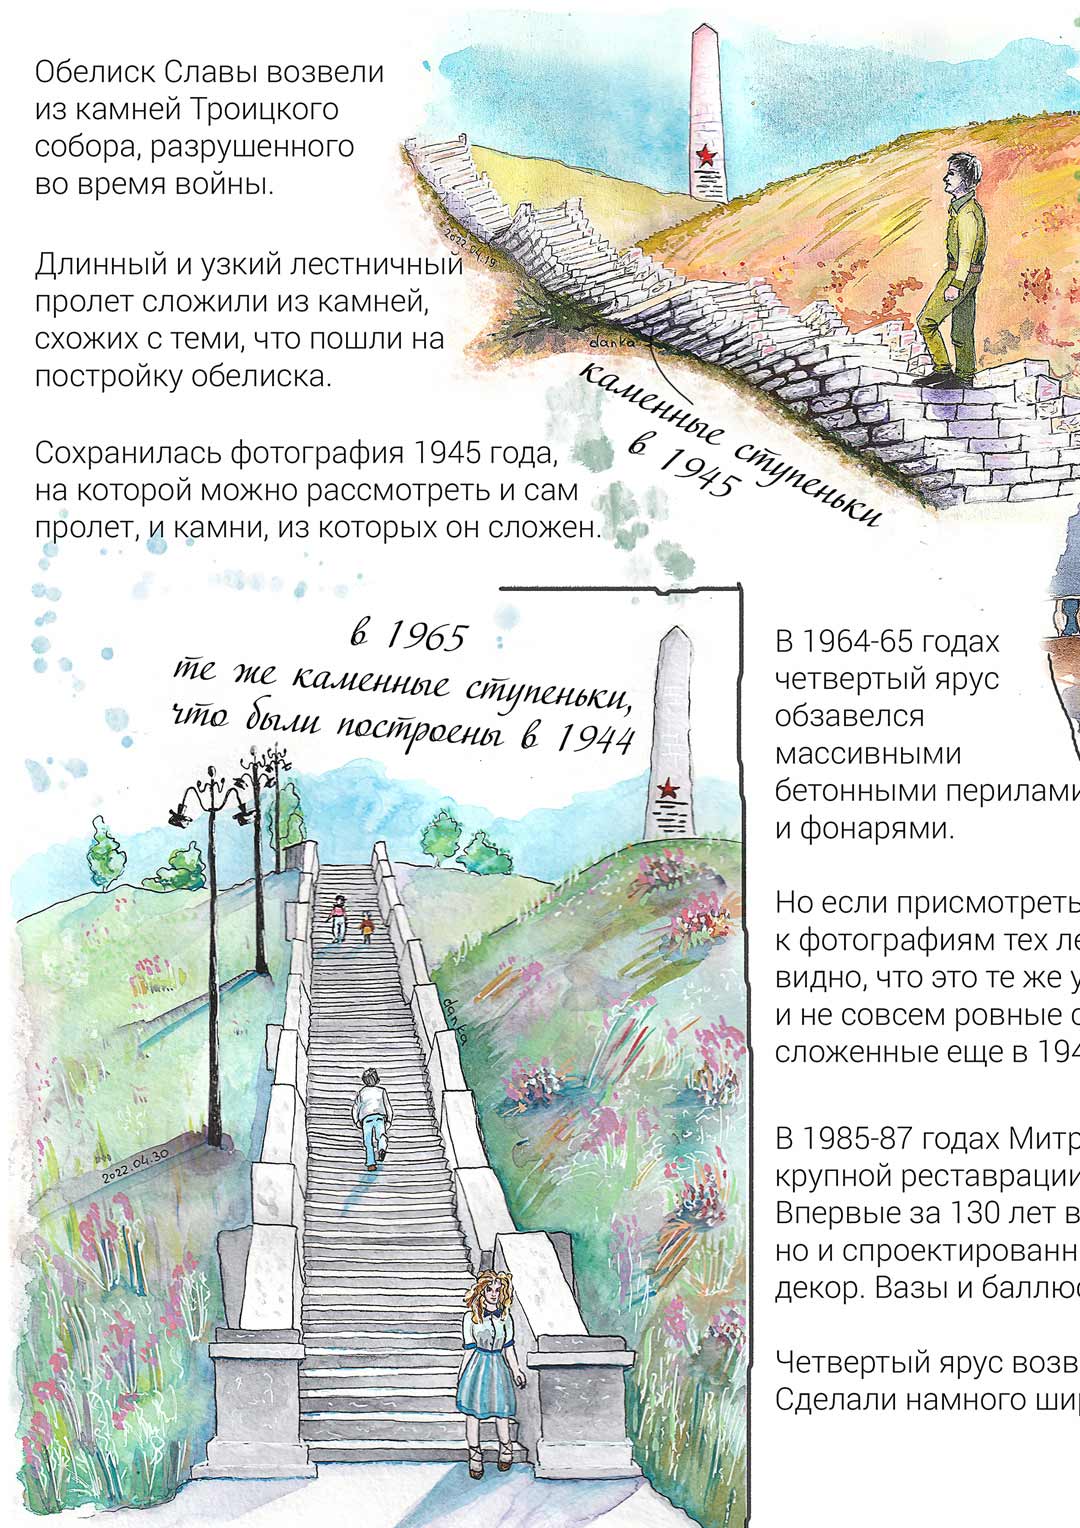 Рисунок 2 страницы открытки о четвертом ярусе Митридатской лестницы